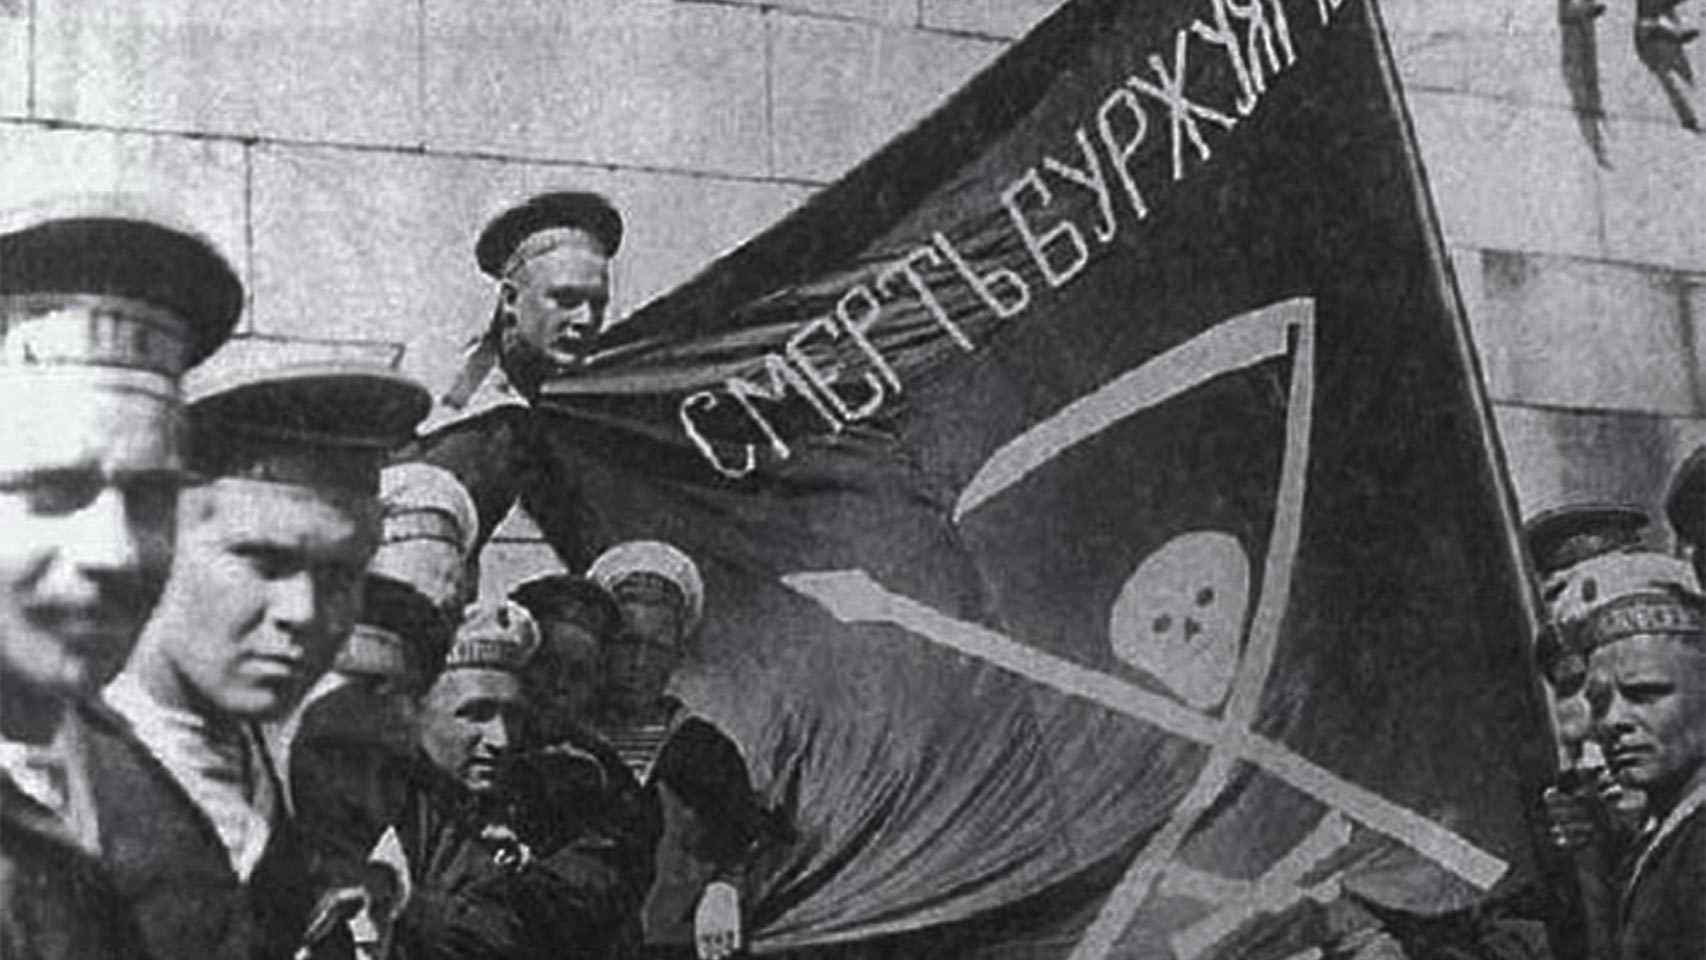 Los marineros sublevados en Kronstadt contra las autoridades bolcheviques exhiben una bandera que denota su ideología anarquista.